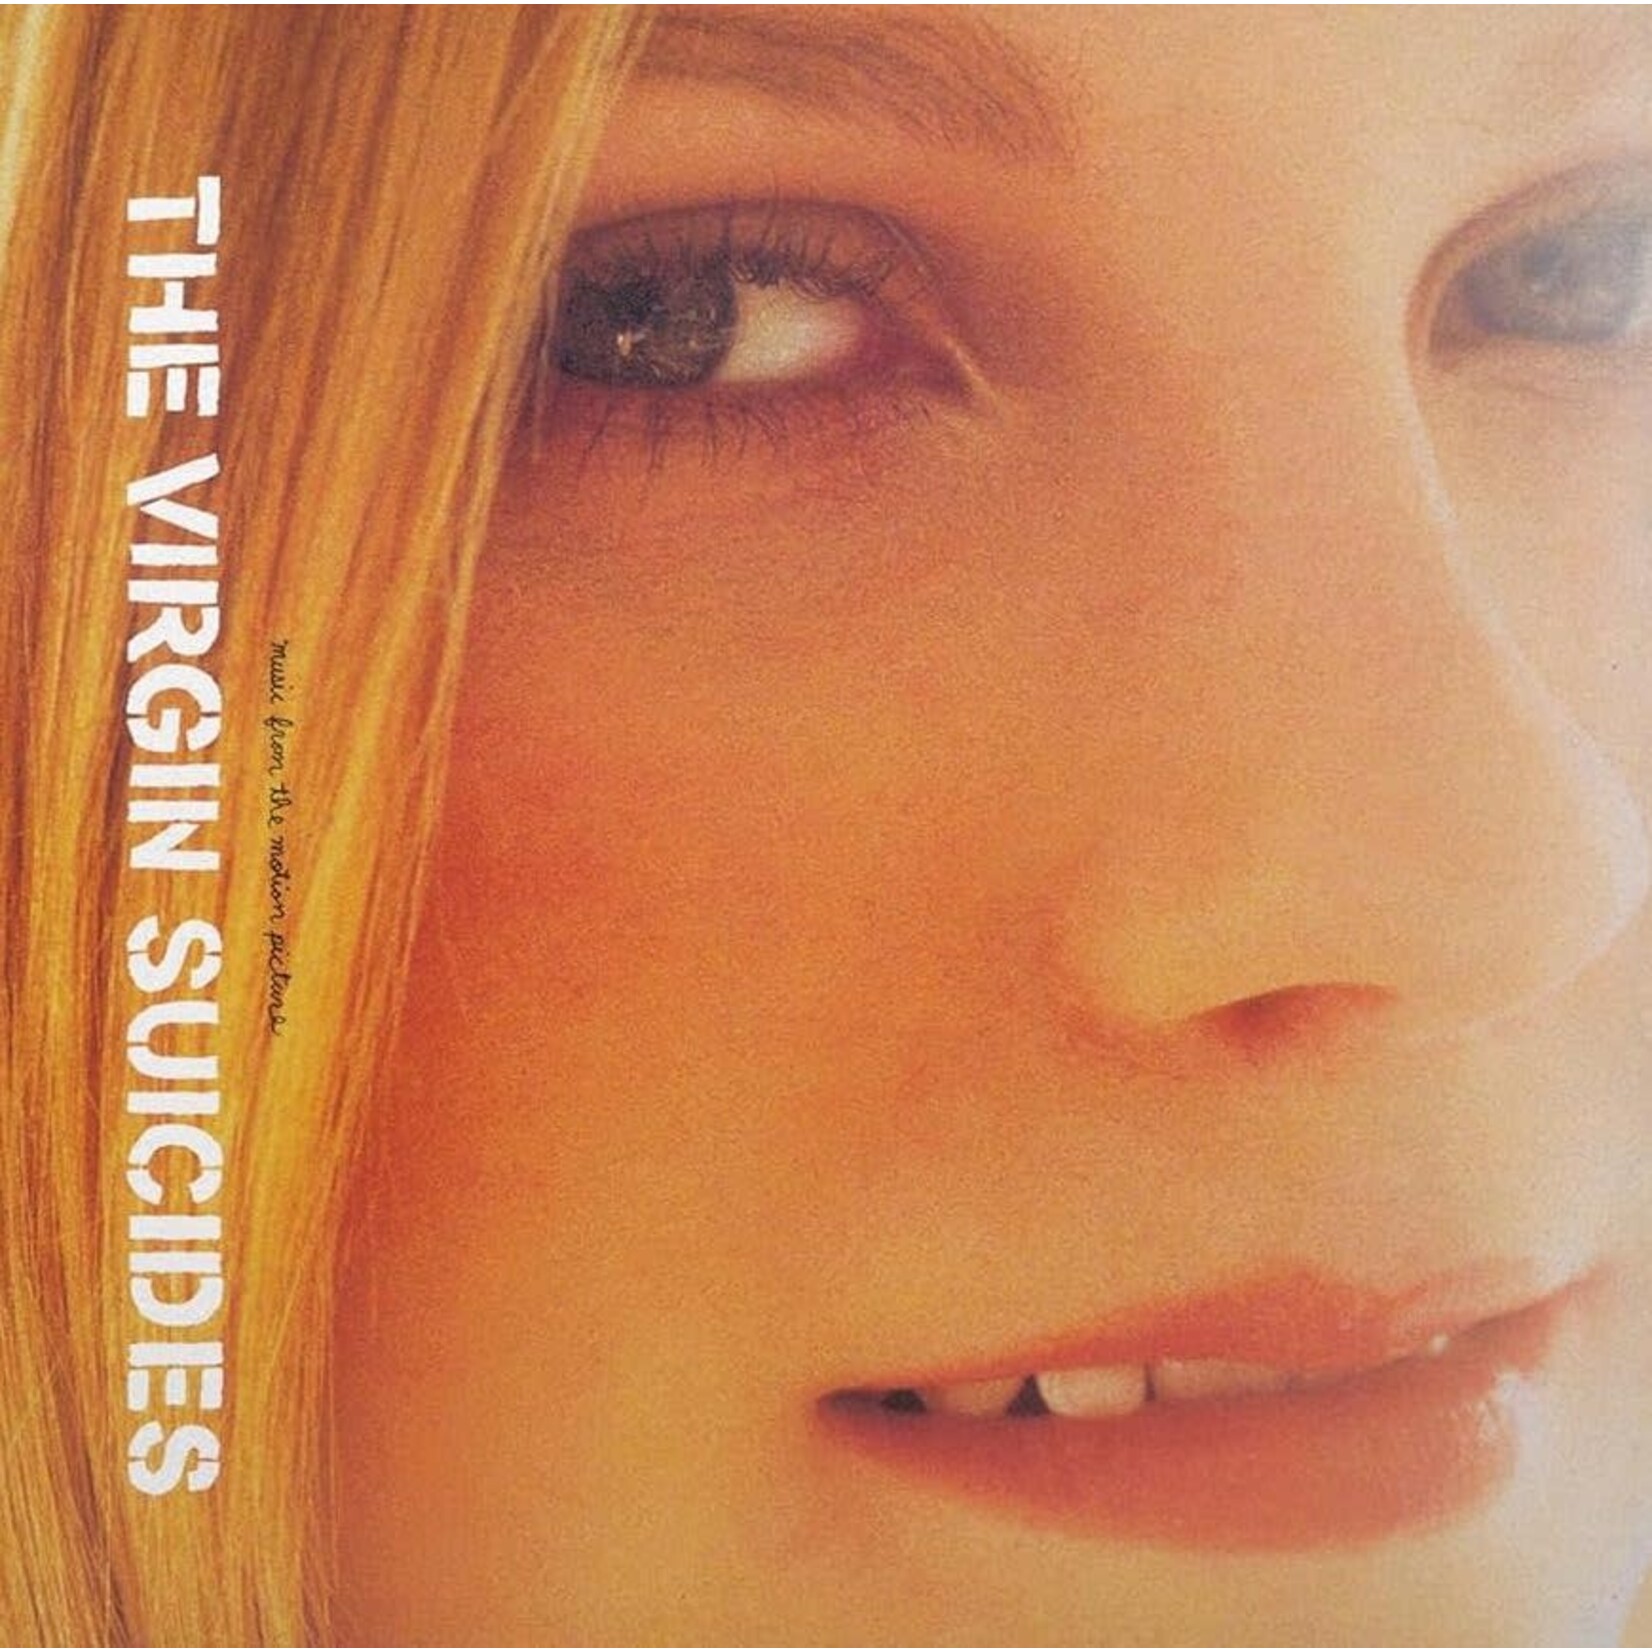 Virgin Suicides  OST.   Limited  Colour Vinyl